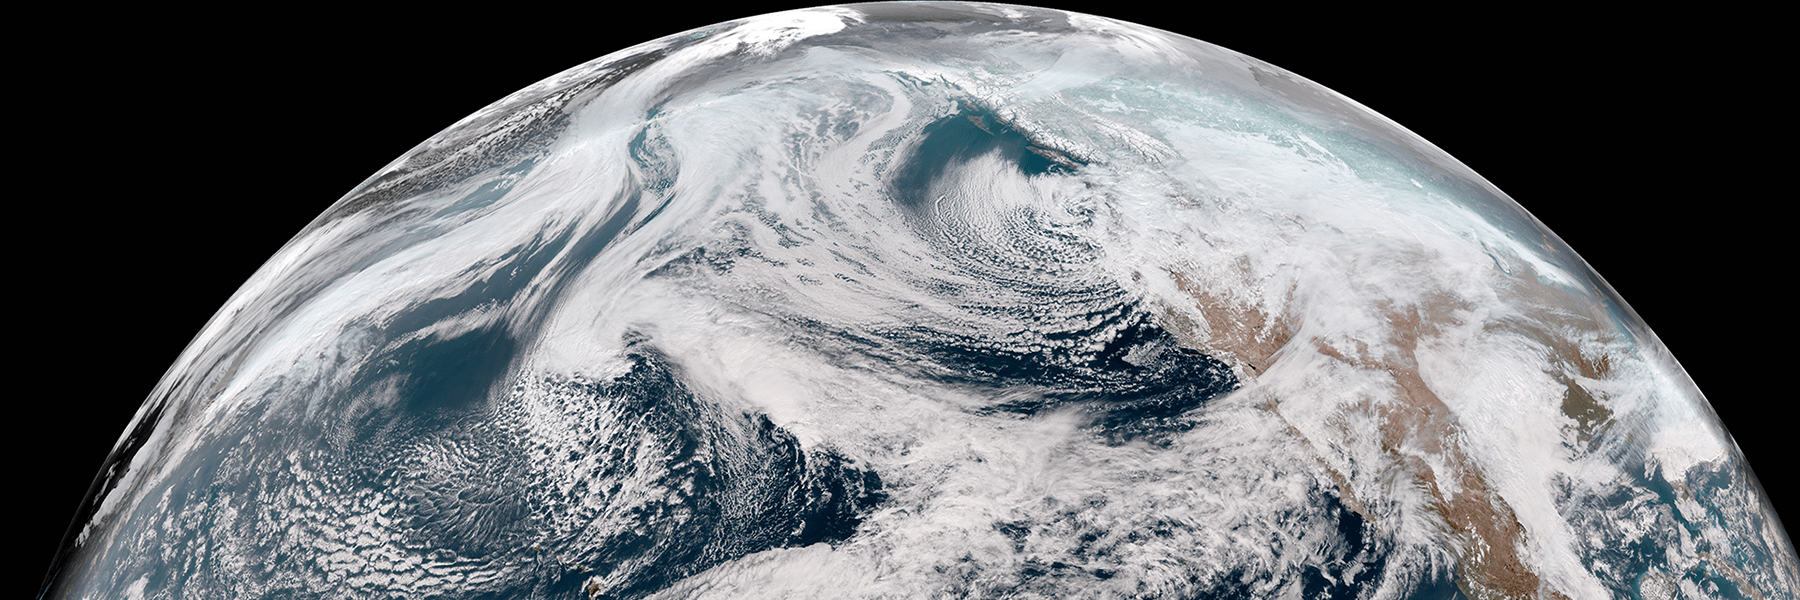 GOES-17 Satellite GeoColor view of the Northern Hemisphere, Feb. 9, 2019.